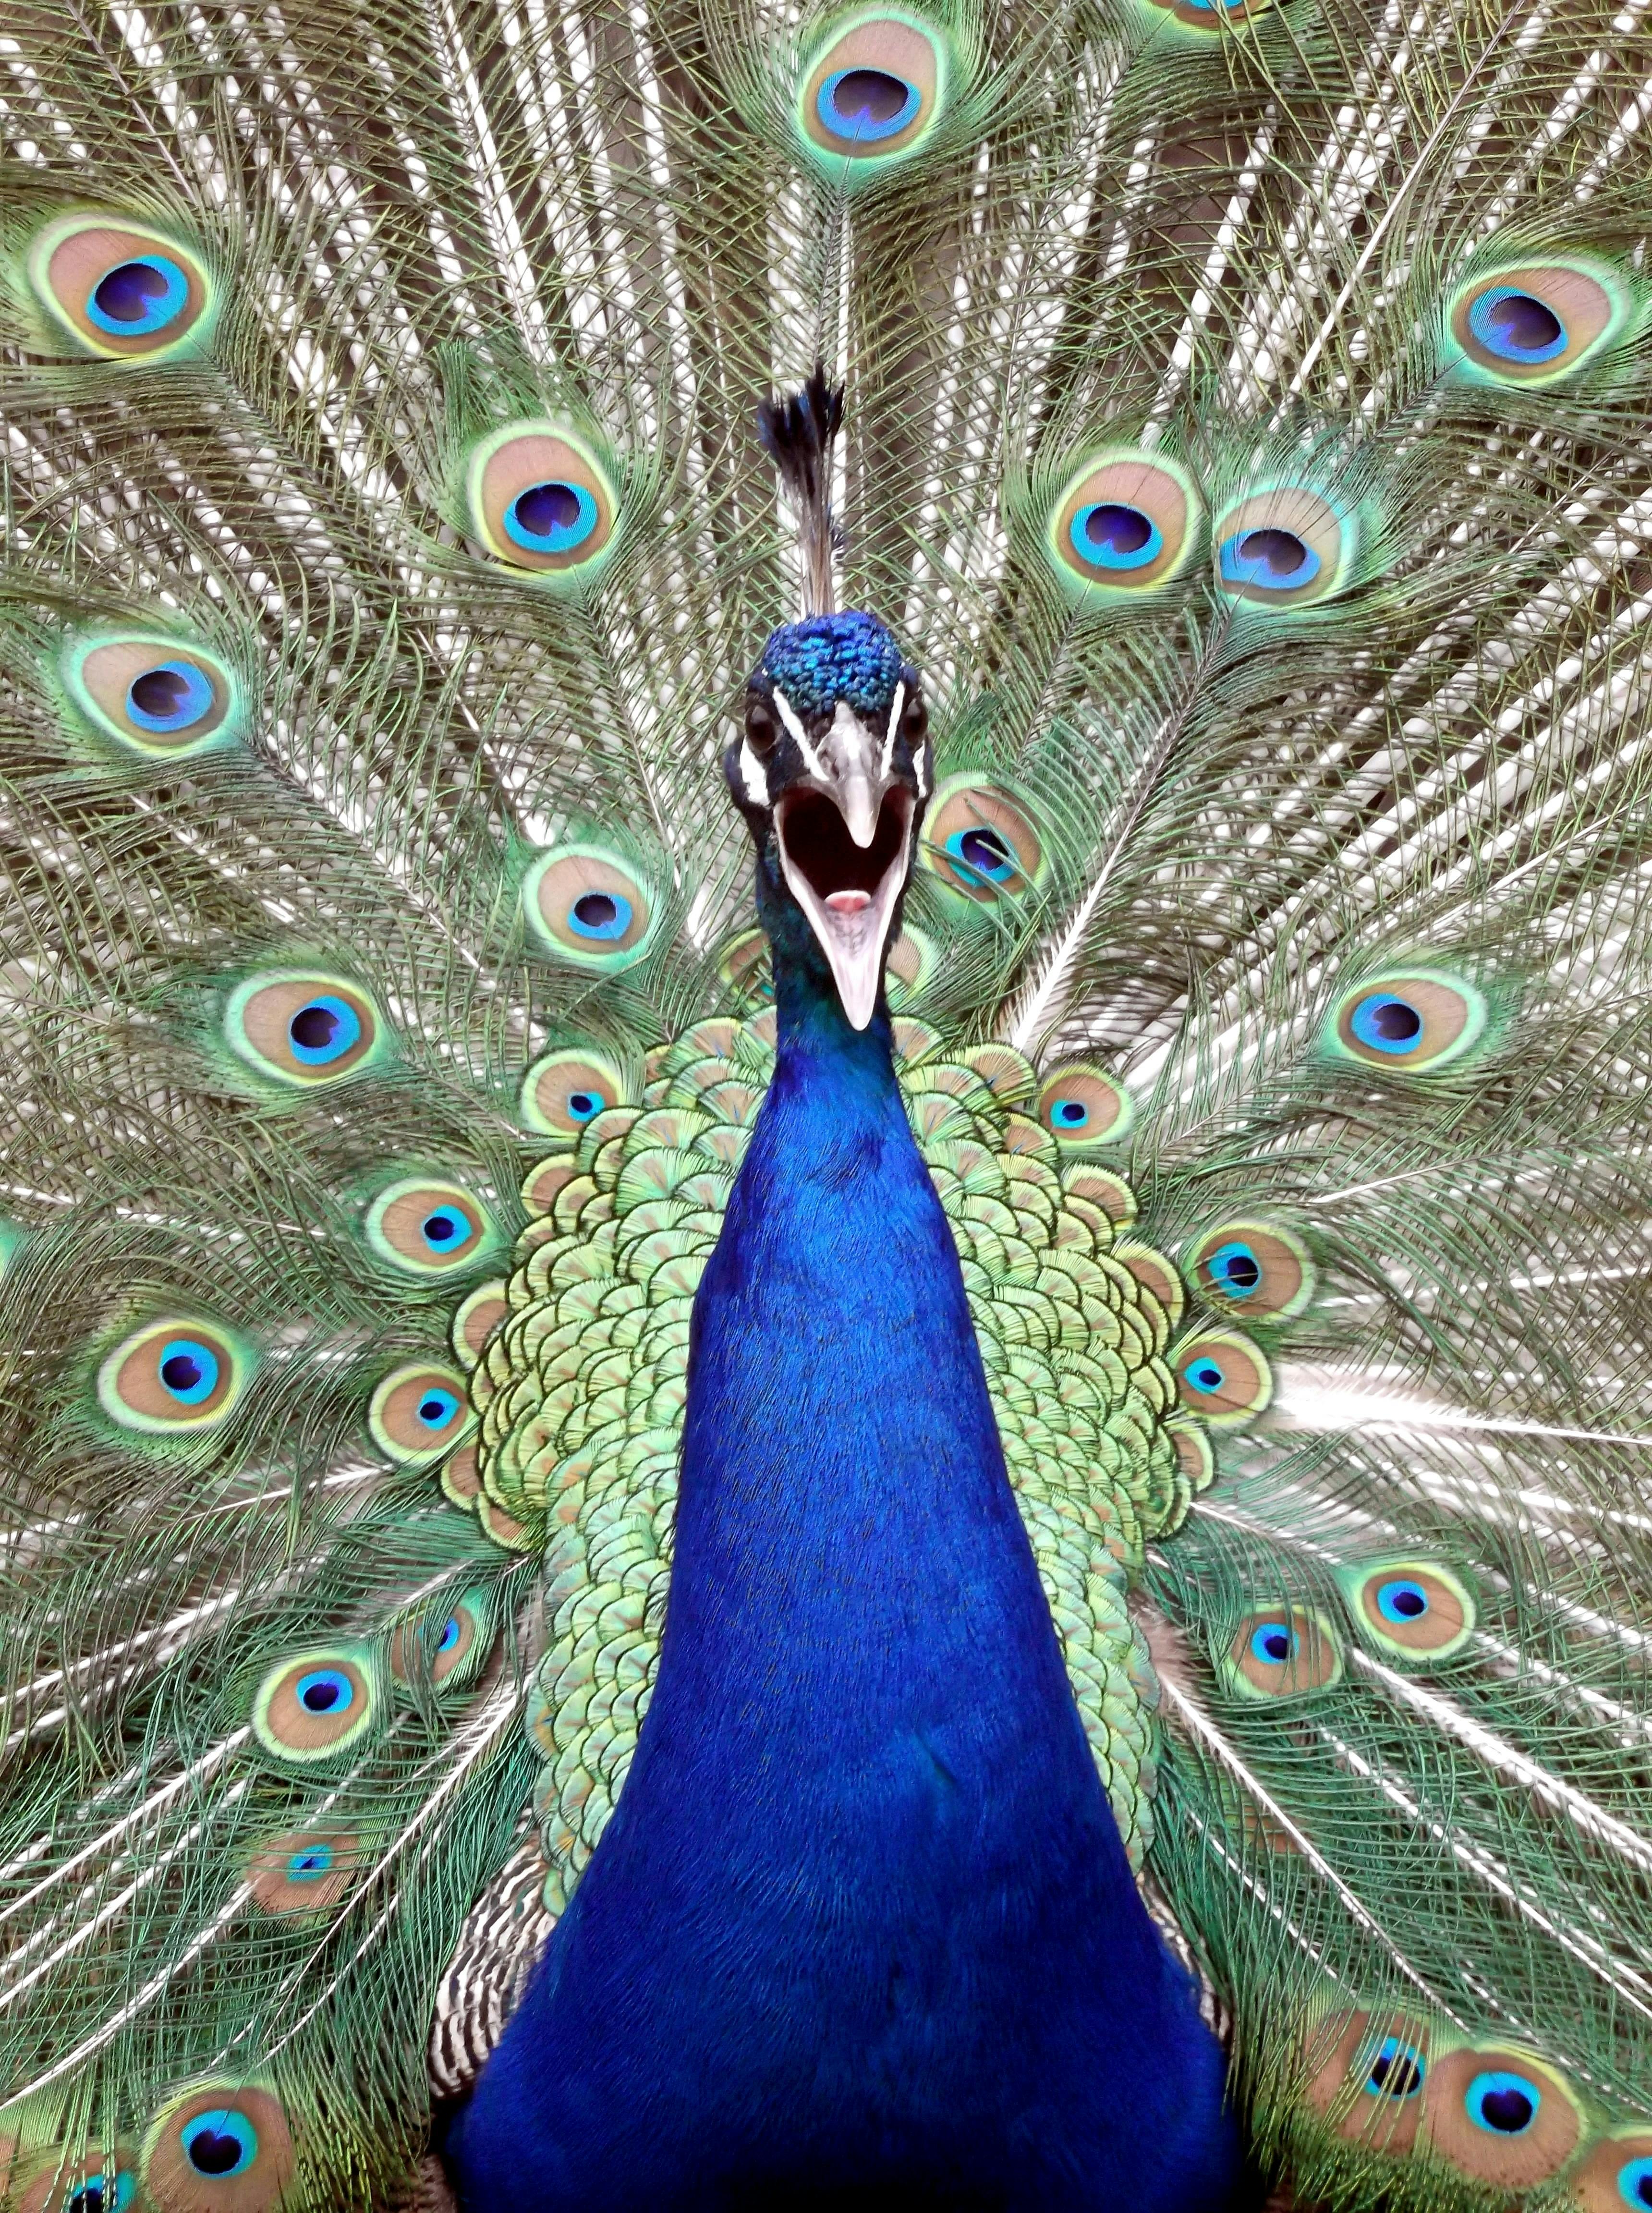 青い雄の孔雀 無料の写真素材